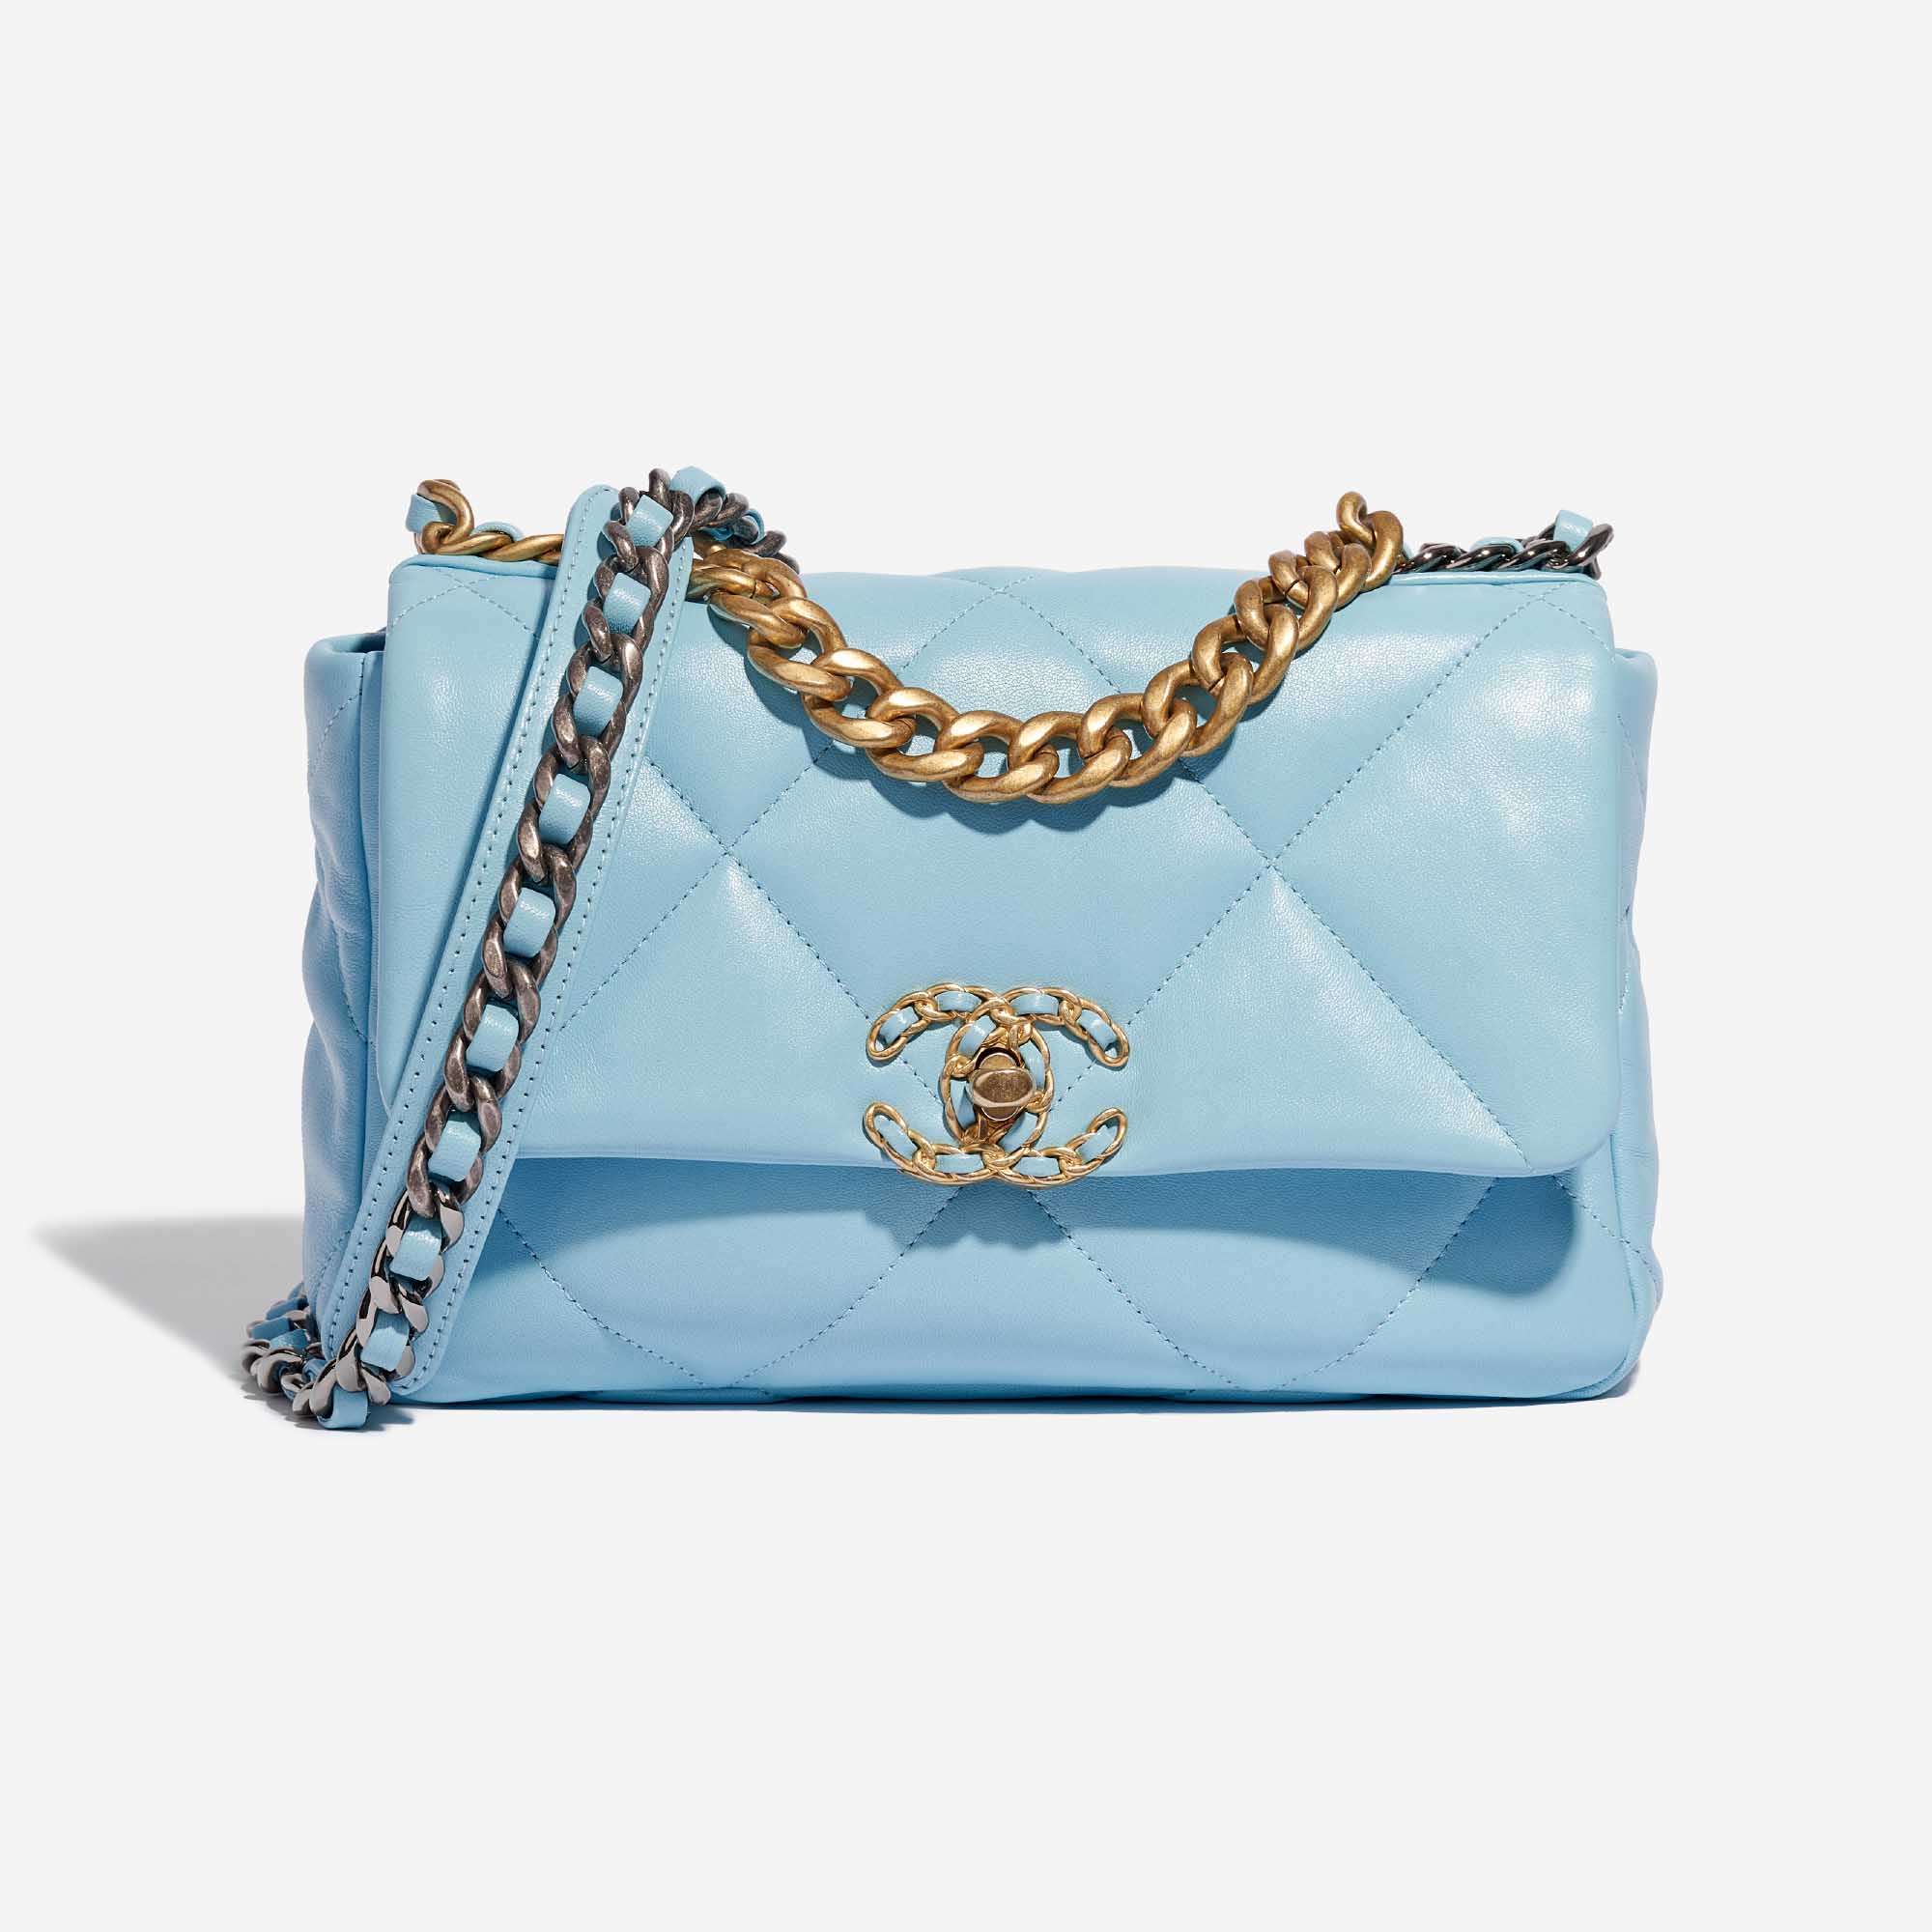 Pre-owned Chanel Tasche 19 Flap Bag Lammleder Sky Blue Blue Front | Verkaufen Sie Ihre Designer-Tasche auf Saclab.com